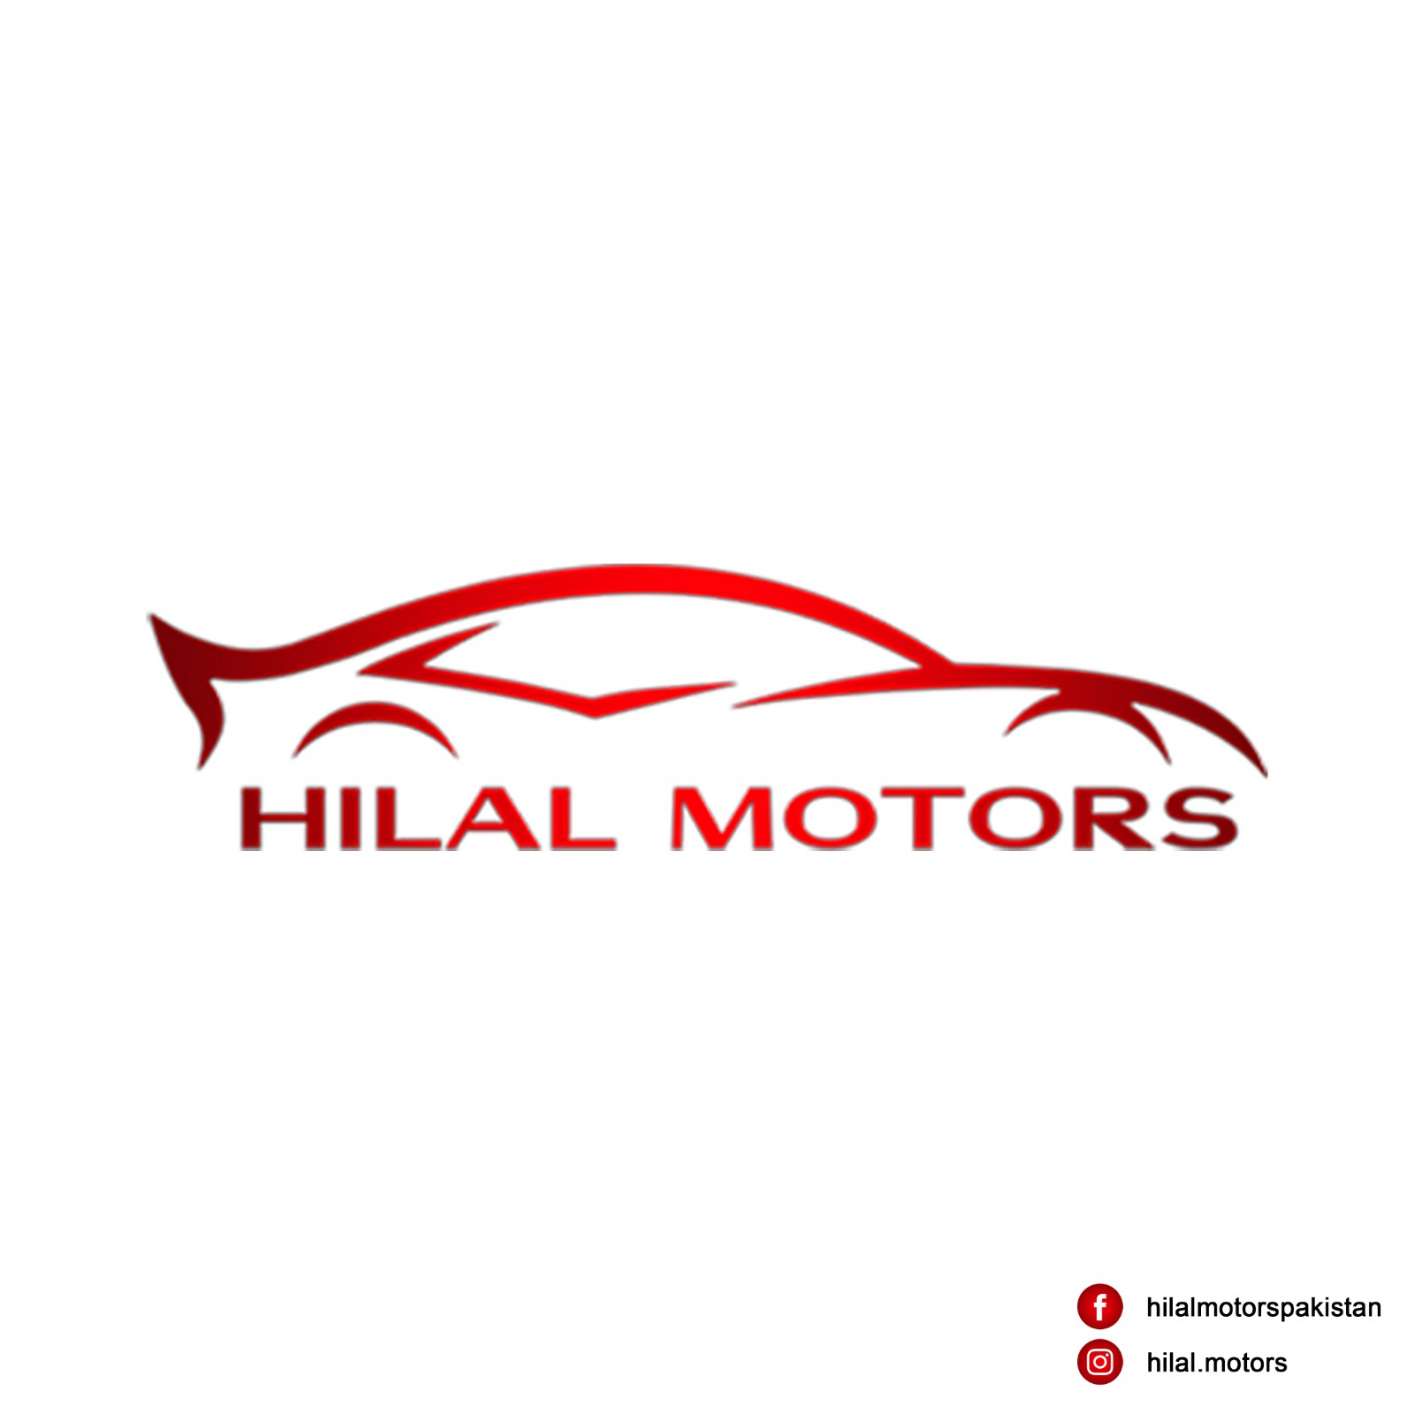 Hilal Motors 